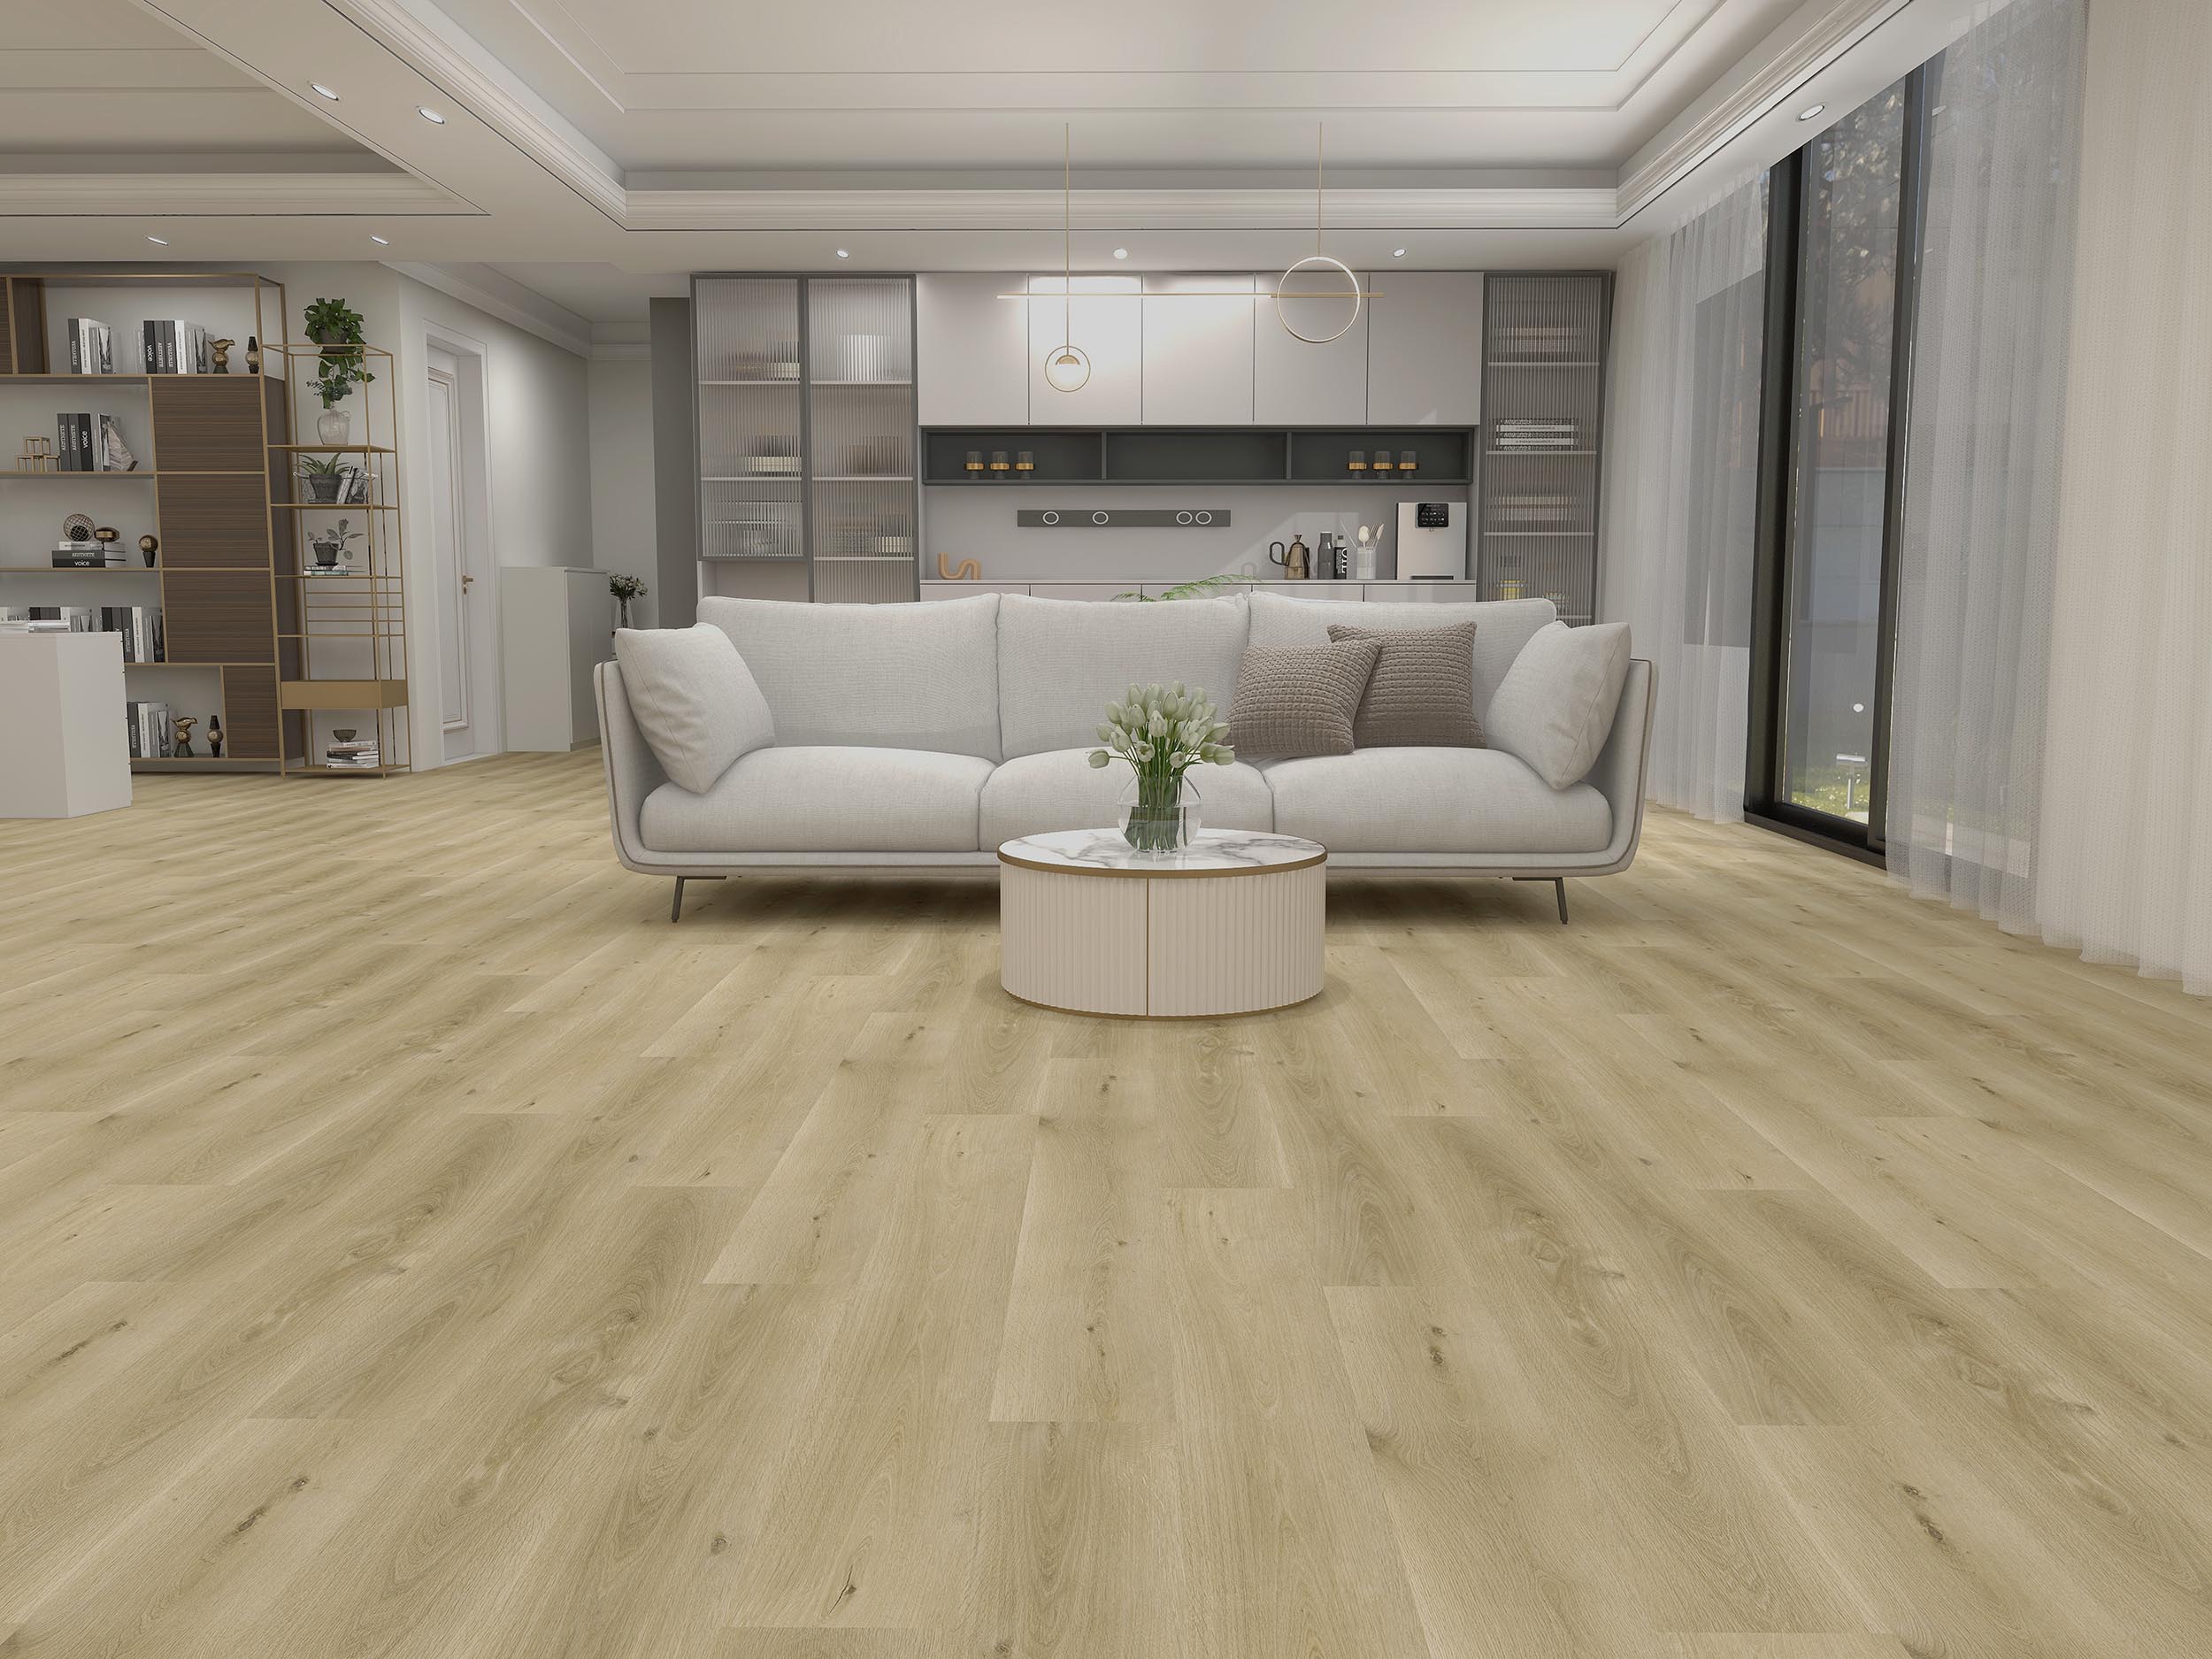 Windsor Gray Hybrid Resilient Flooring